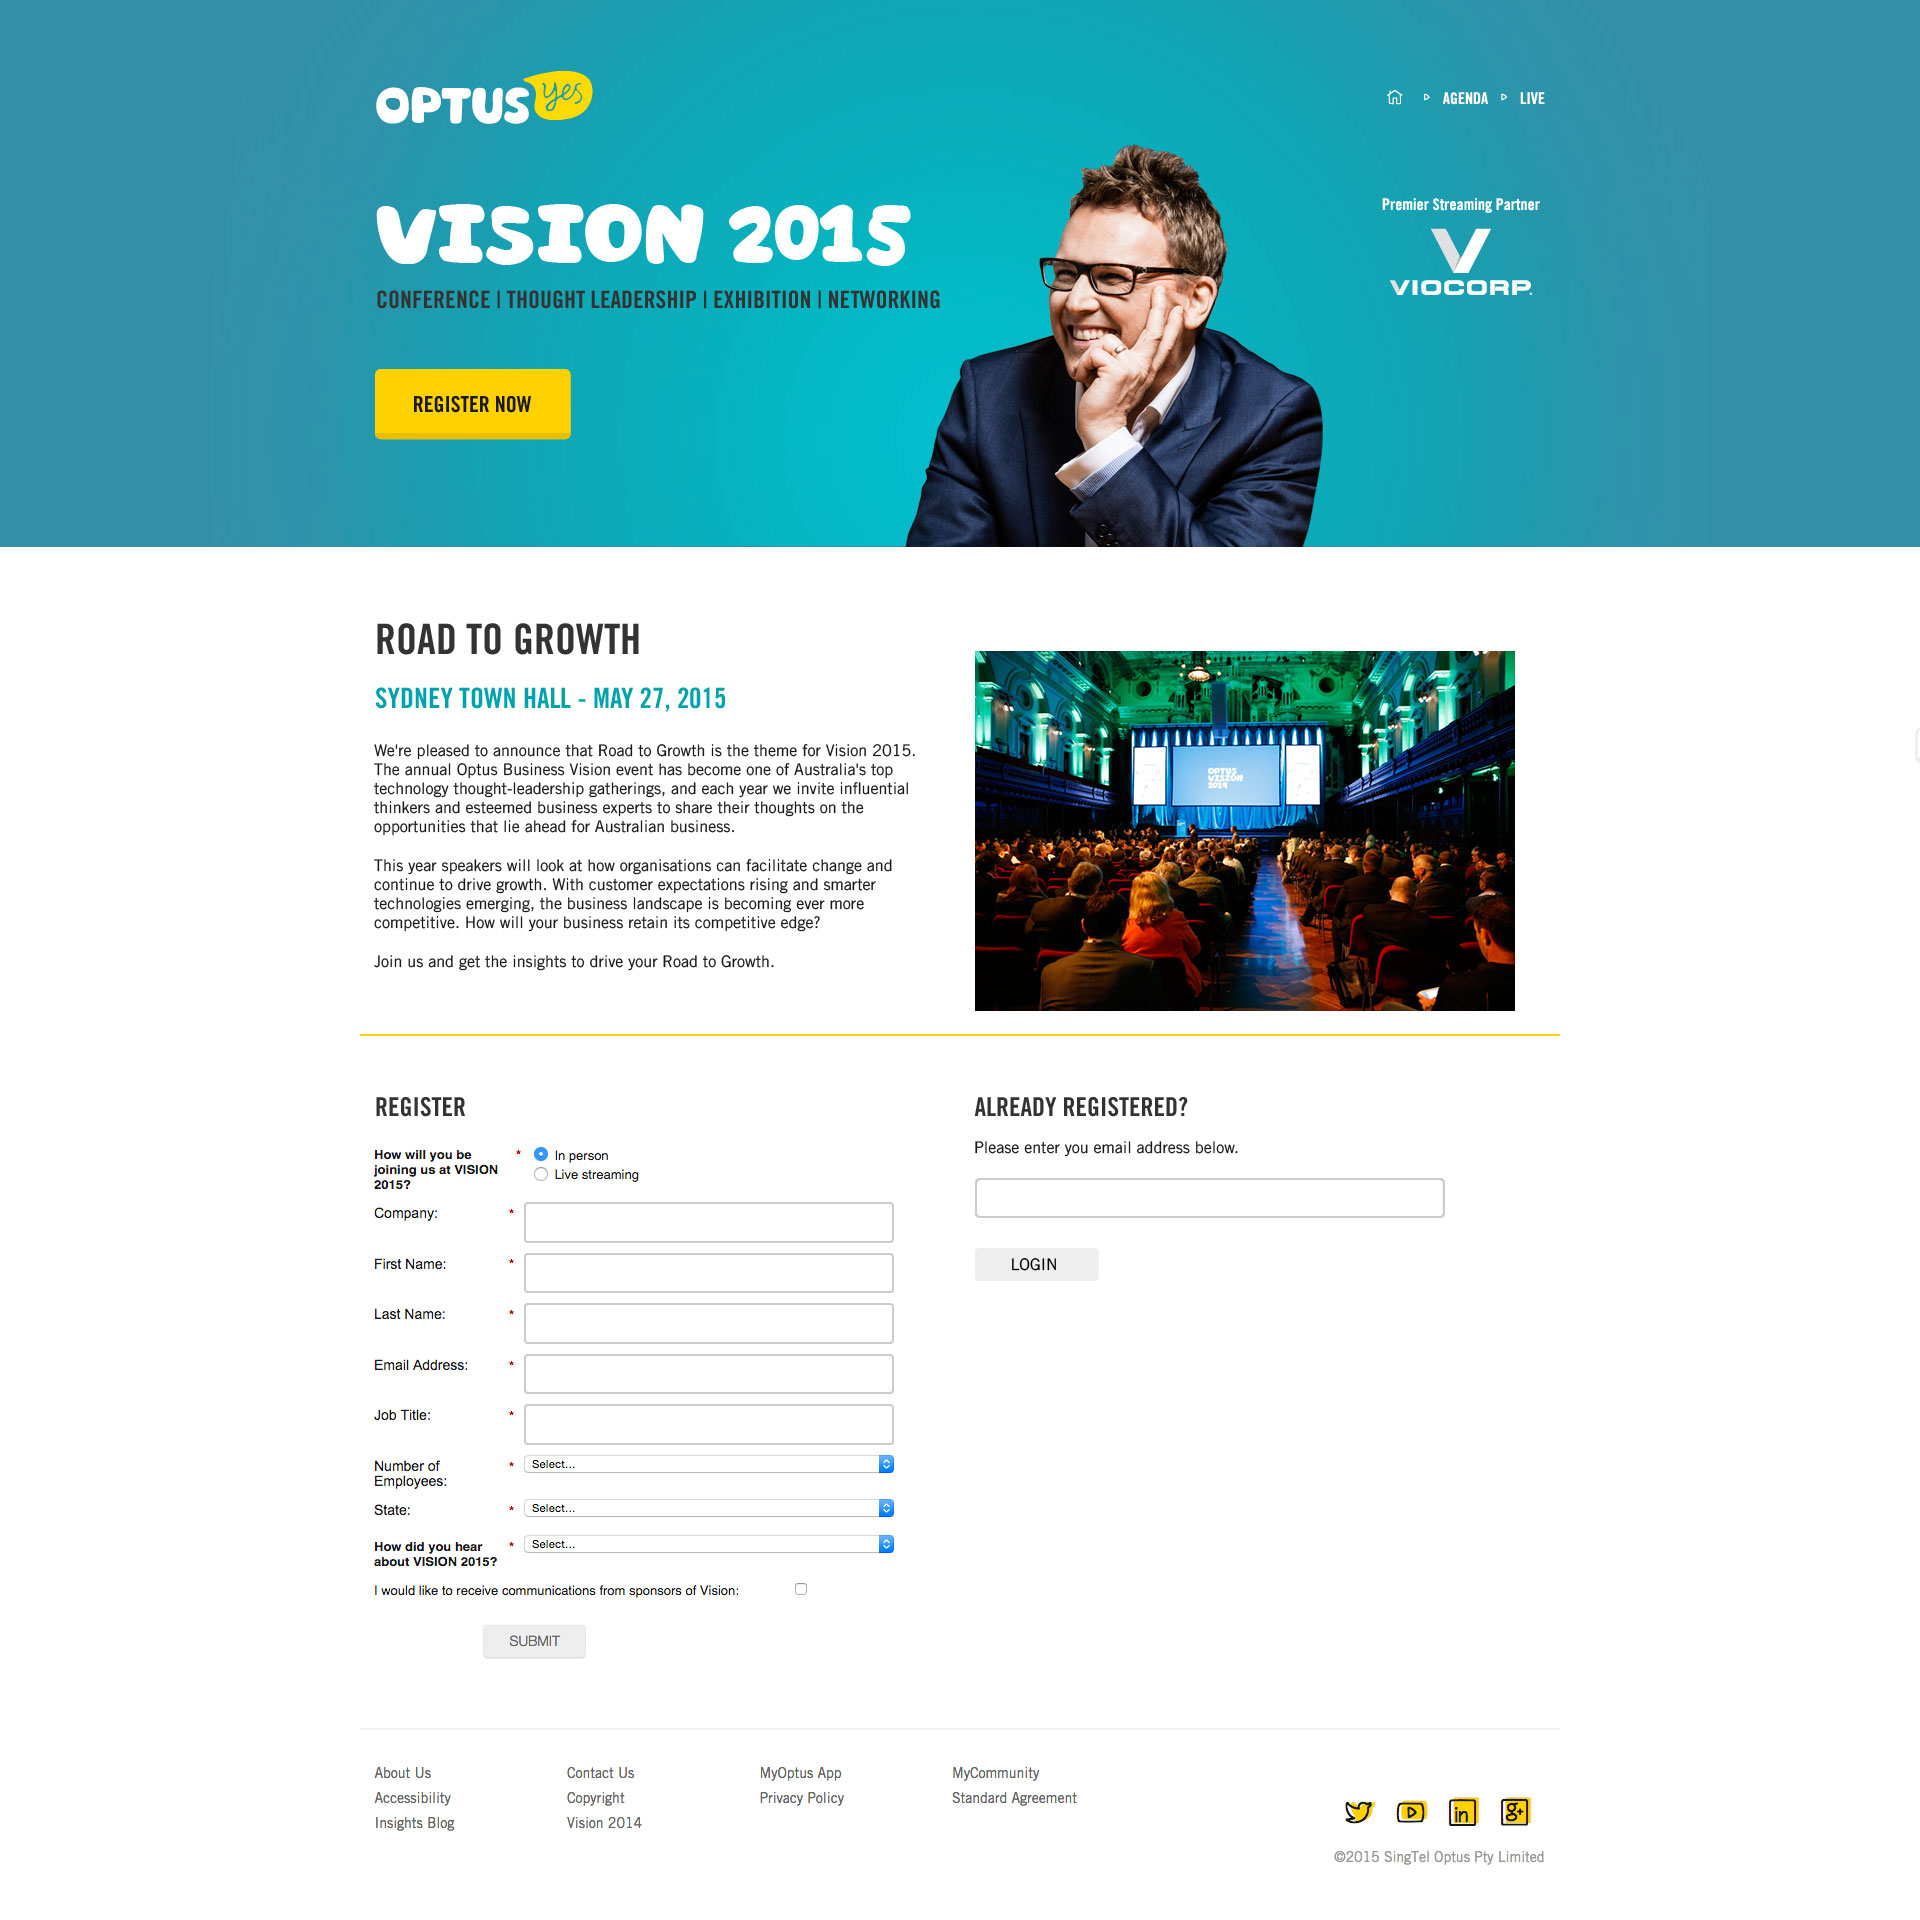 Optus Vision 2015